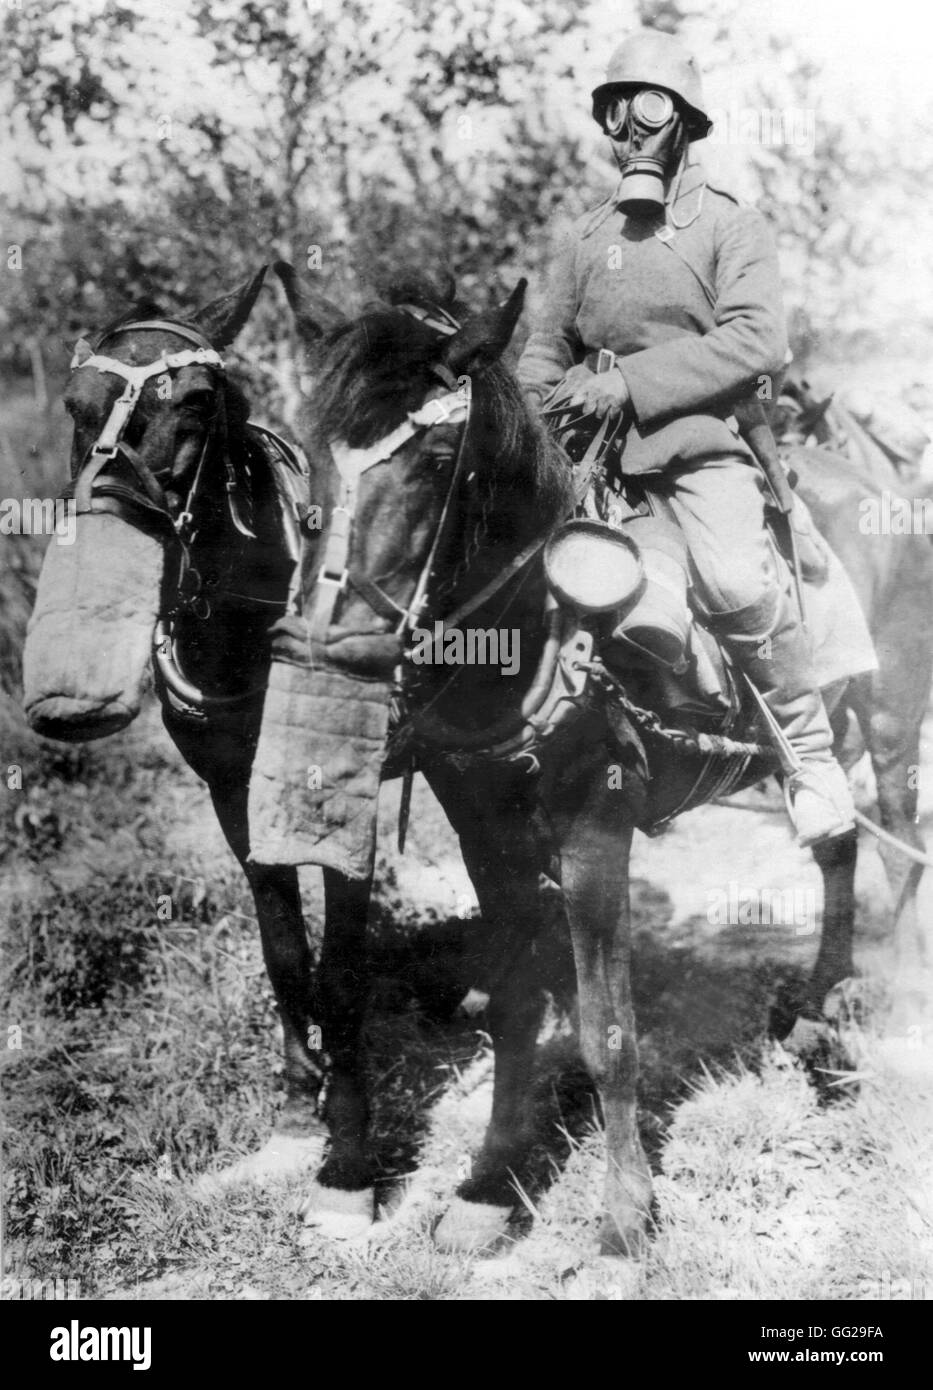 Soldat allemand à cheval portant un masque à gaz Allemagne - Première Guerre mondiale, Bruxelles. Musée de la guerre Banque D'Images